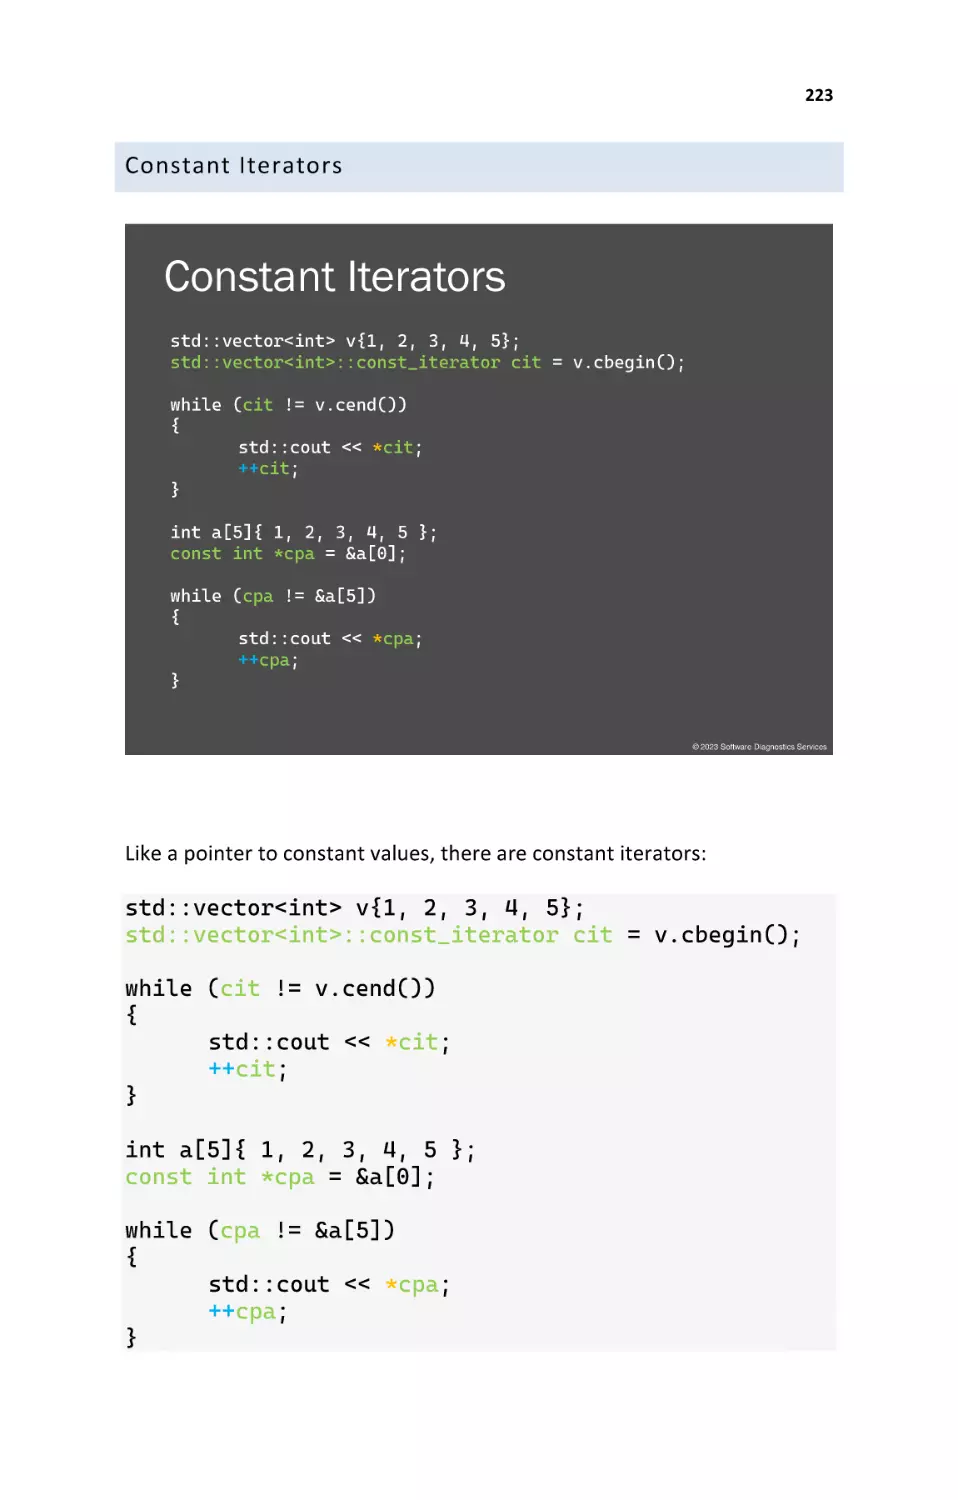 Constant Iterators